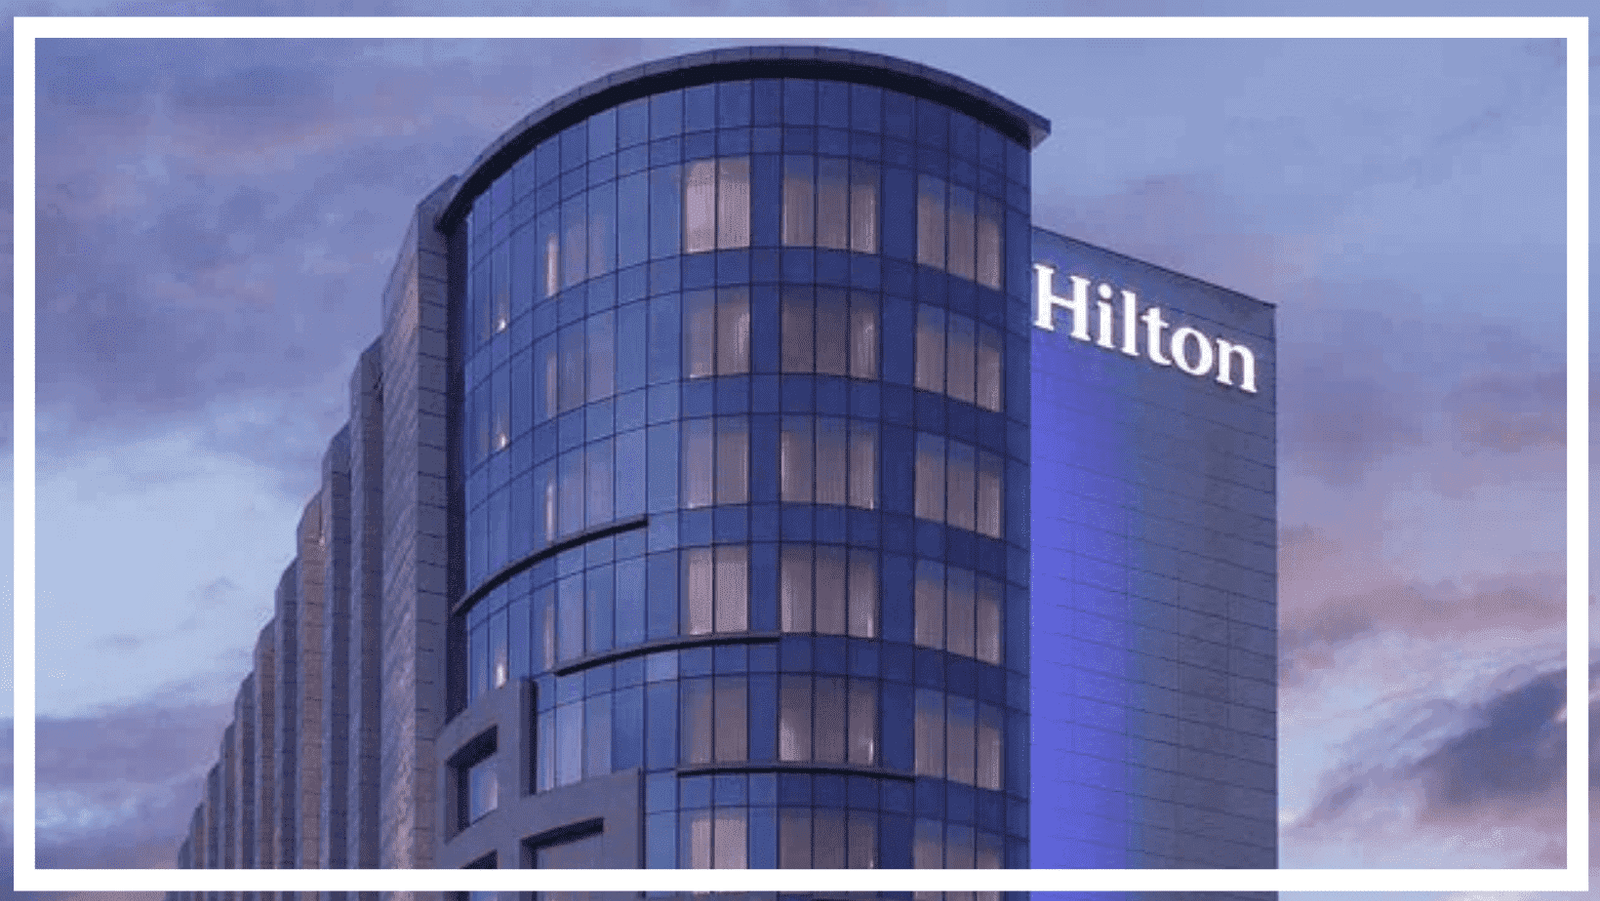 Hilton Hotel in Jaipur